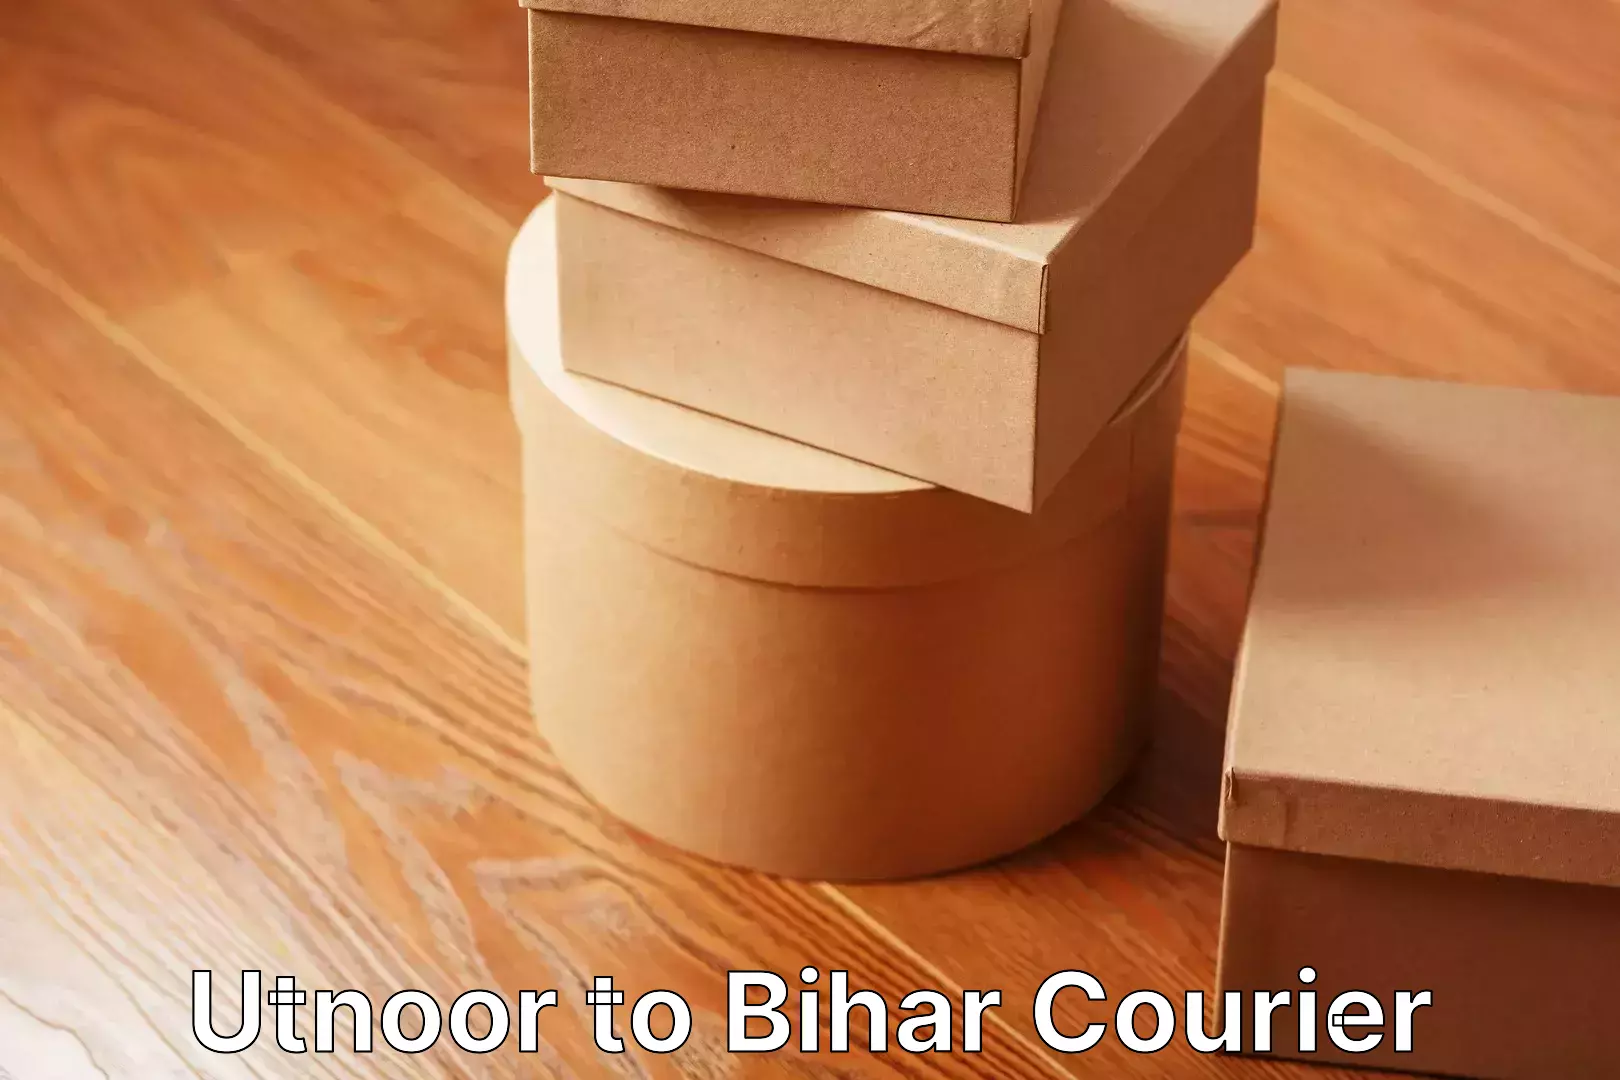 Professional home movers Utnoor to Bihar